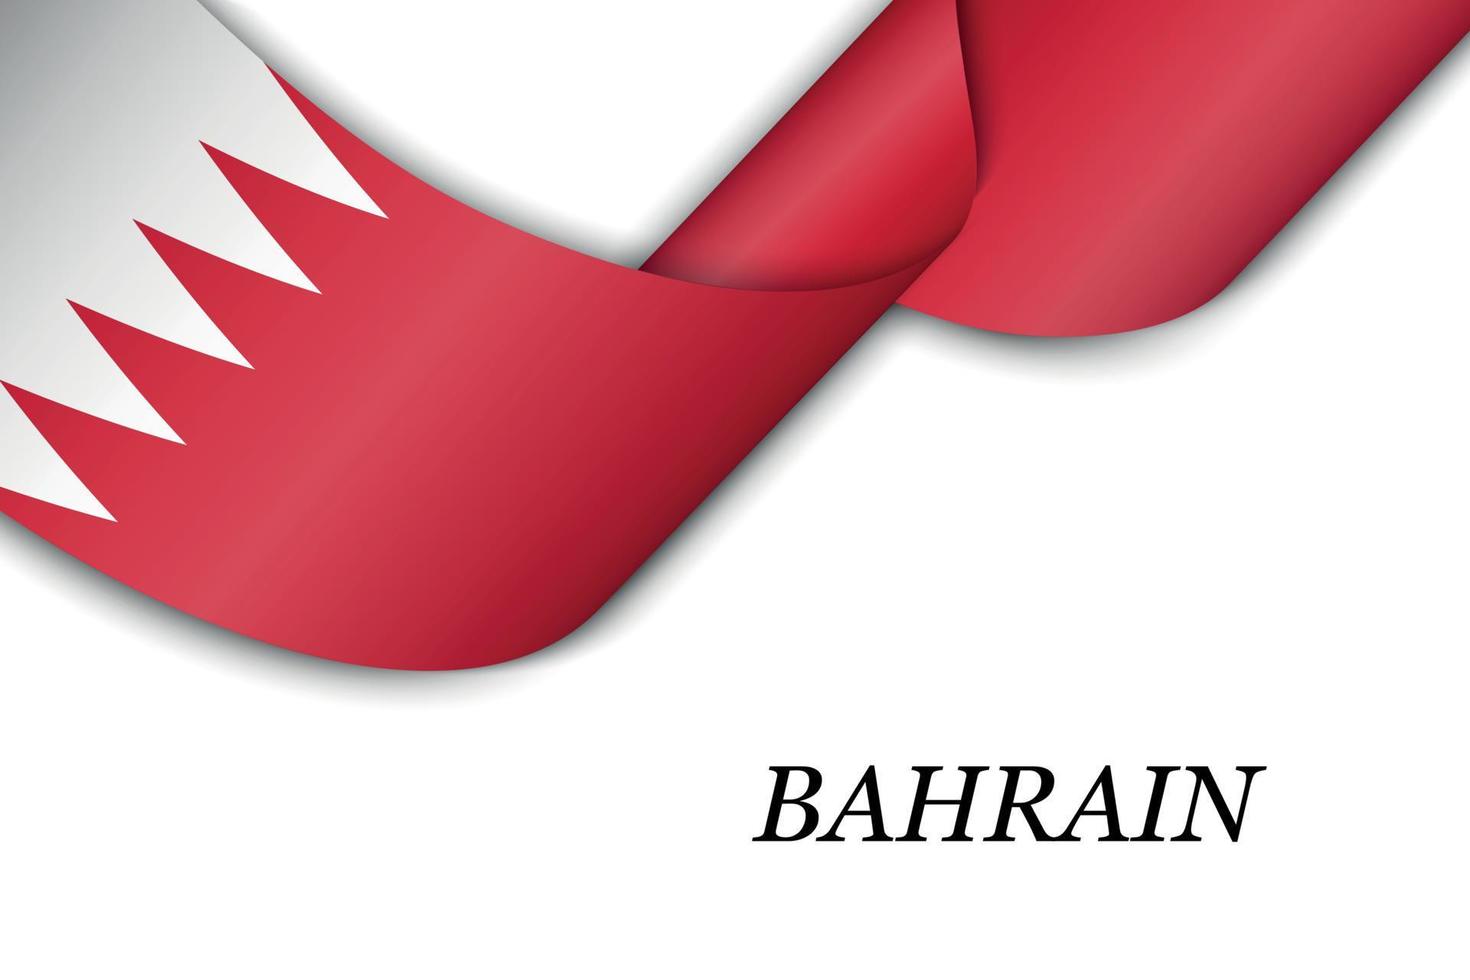 zwaaiend lint of spandoek met vlag van bahrein vector